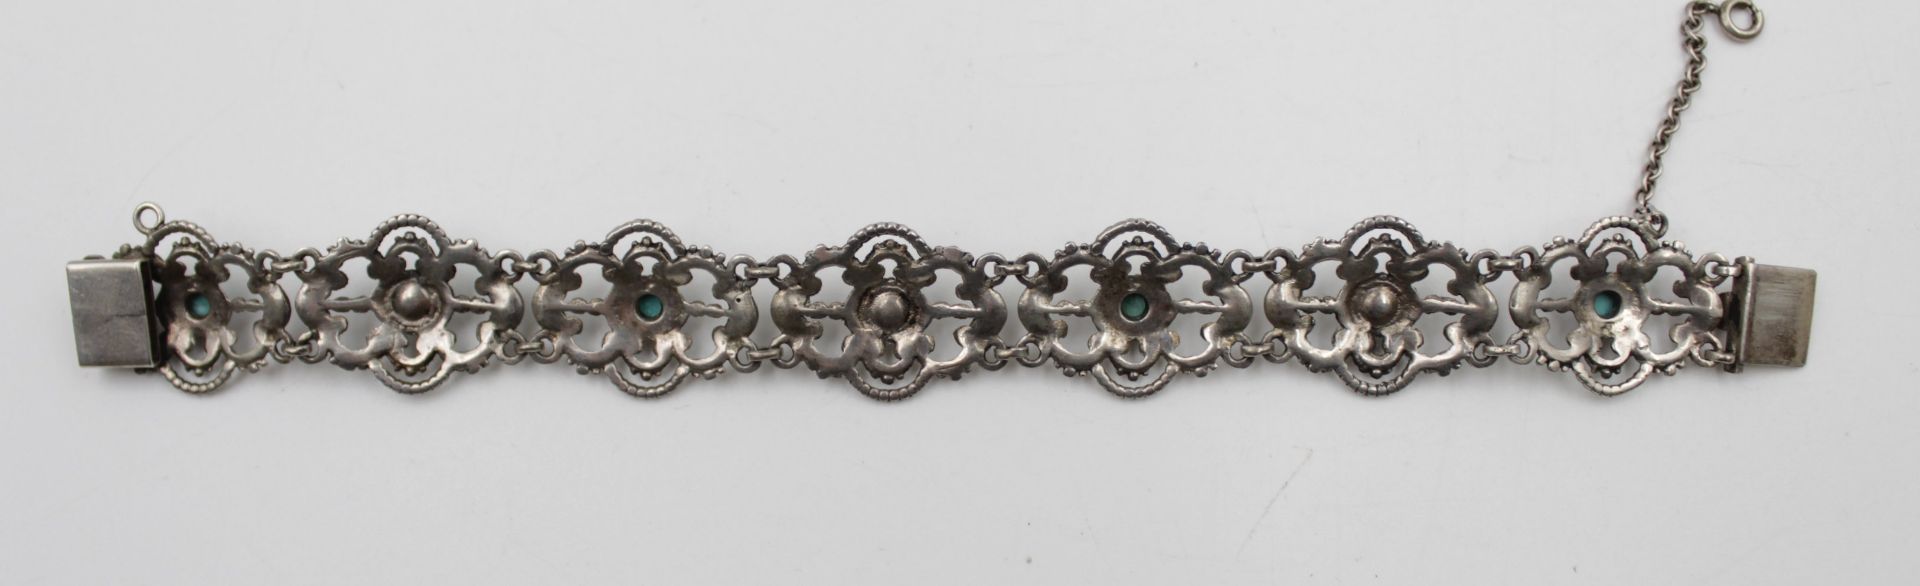 835er Silber-Armband, Türkise und Perlen, älter, 21,3gr., ca. L-18,5cm. 0 - Bild 3 aus 5